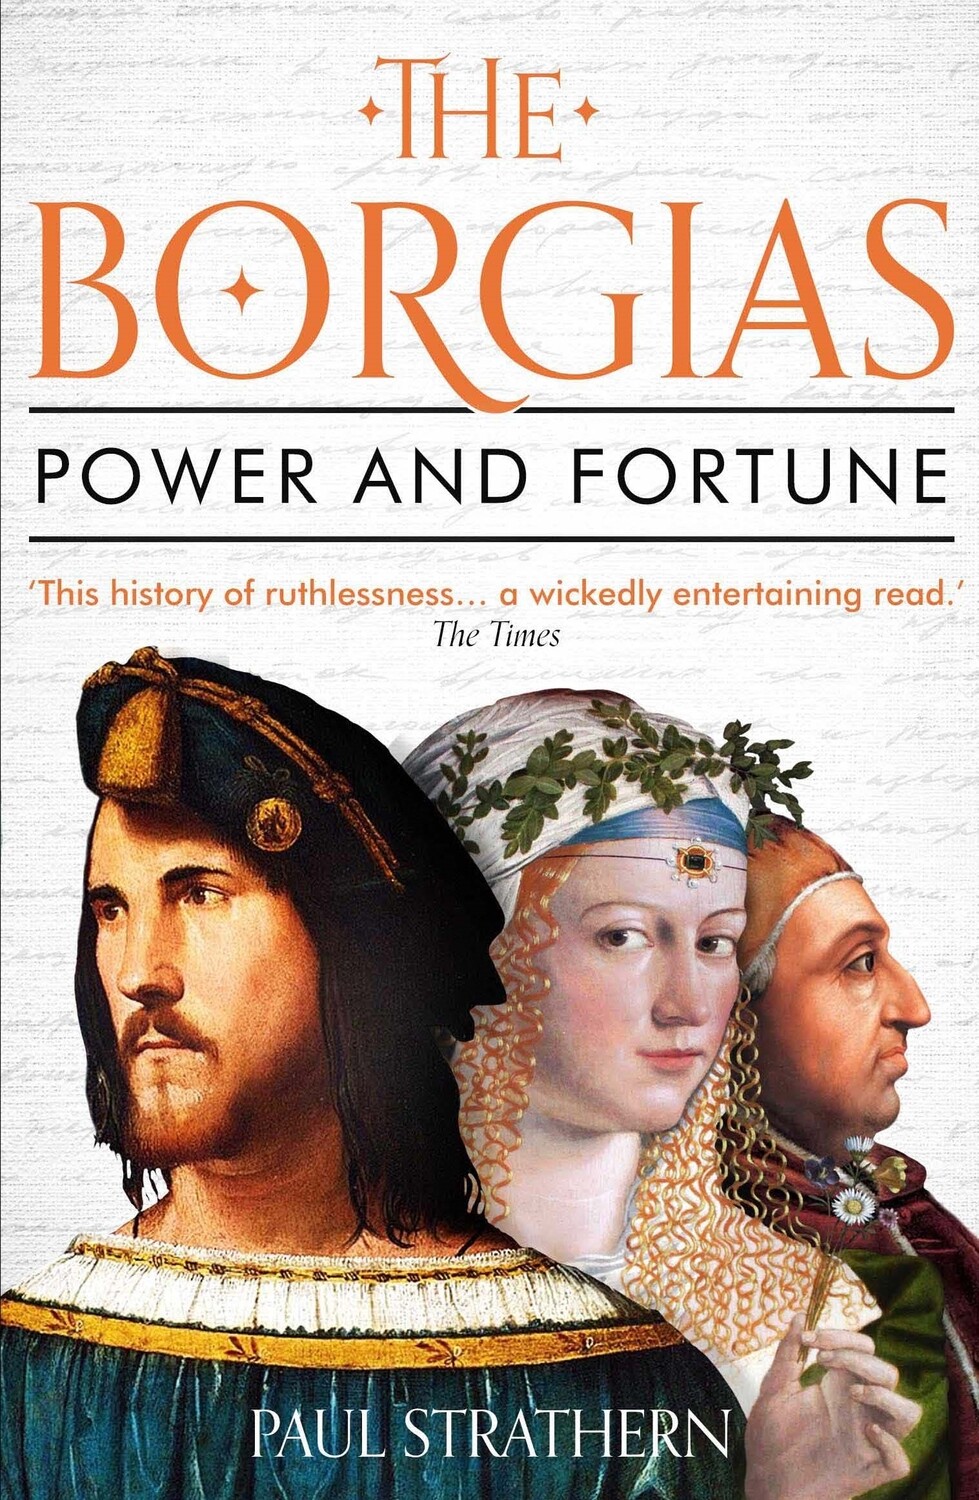 Borgias, The: Power and Fortune